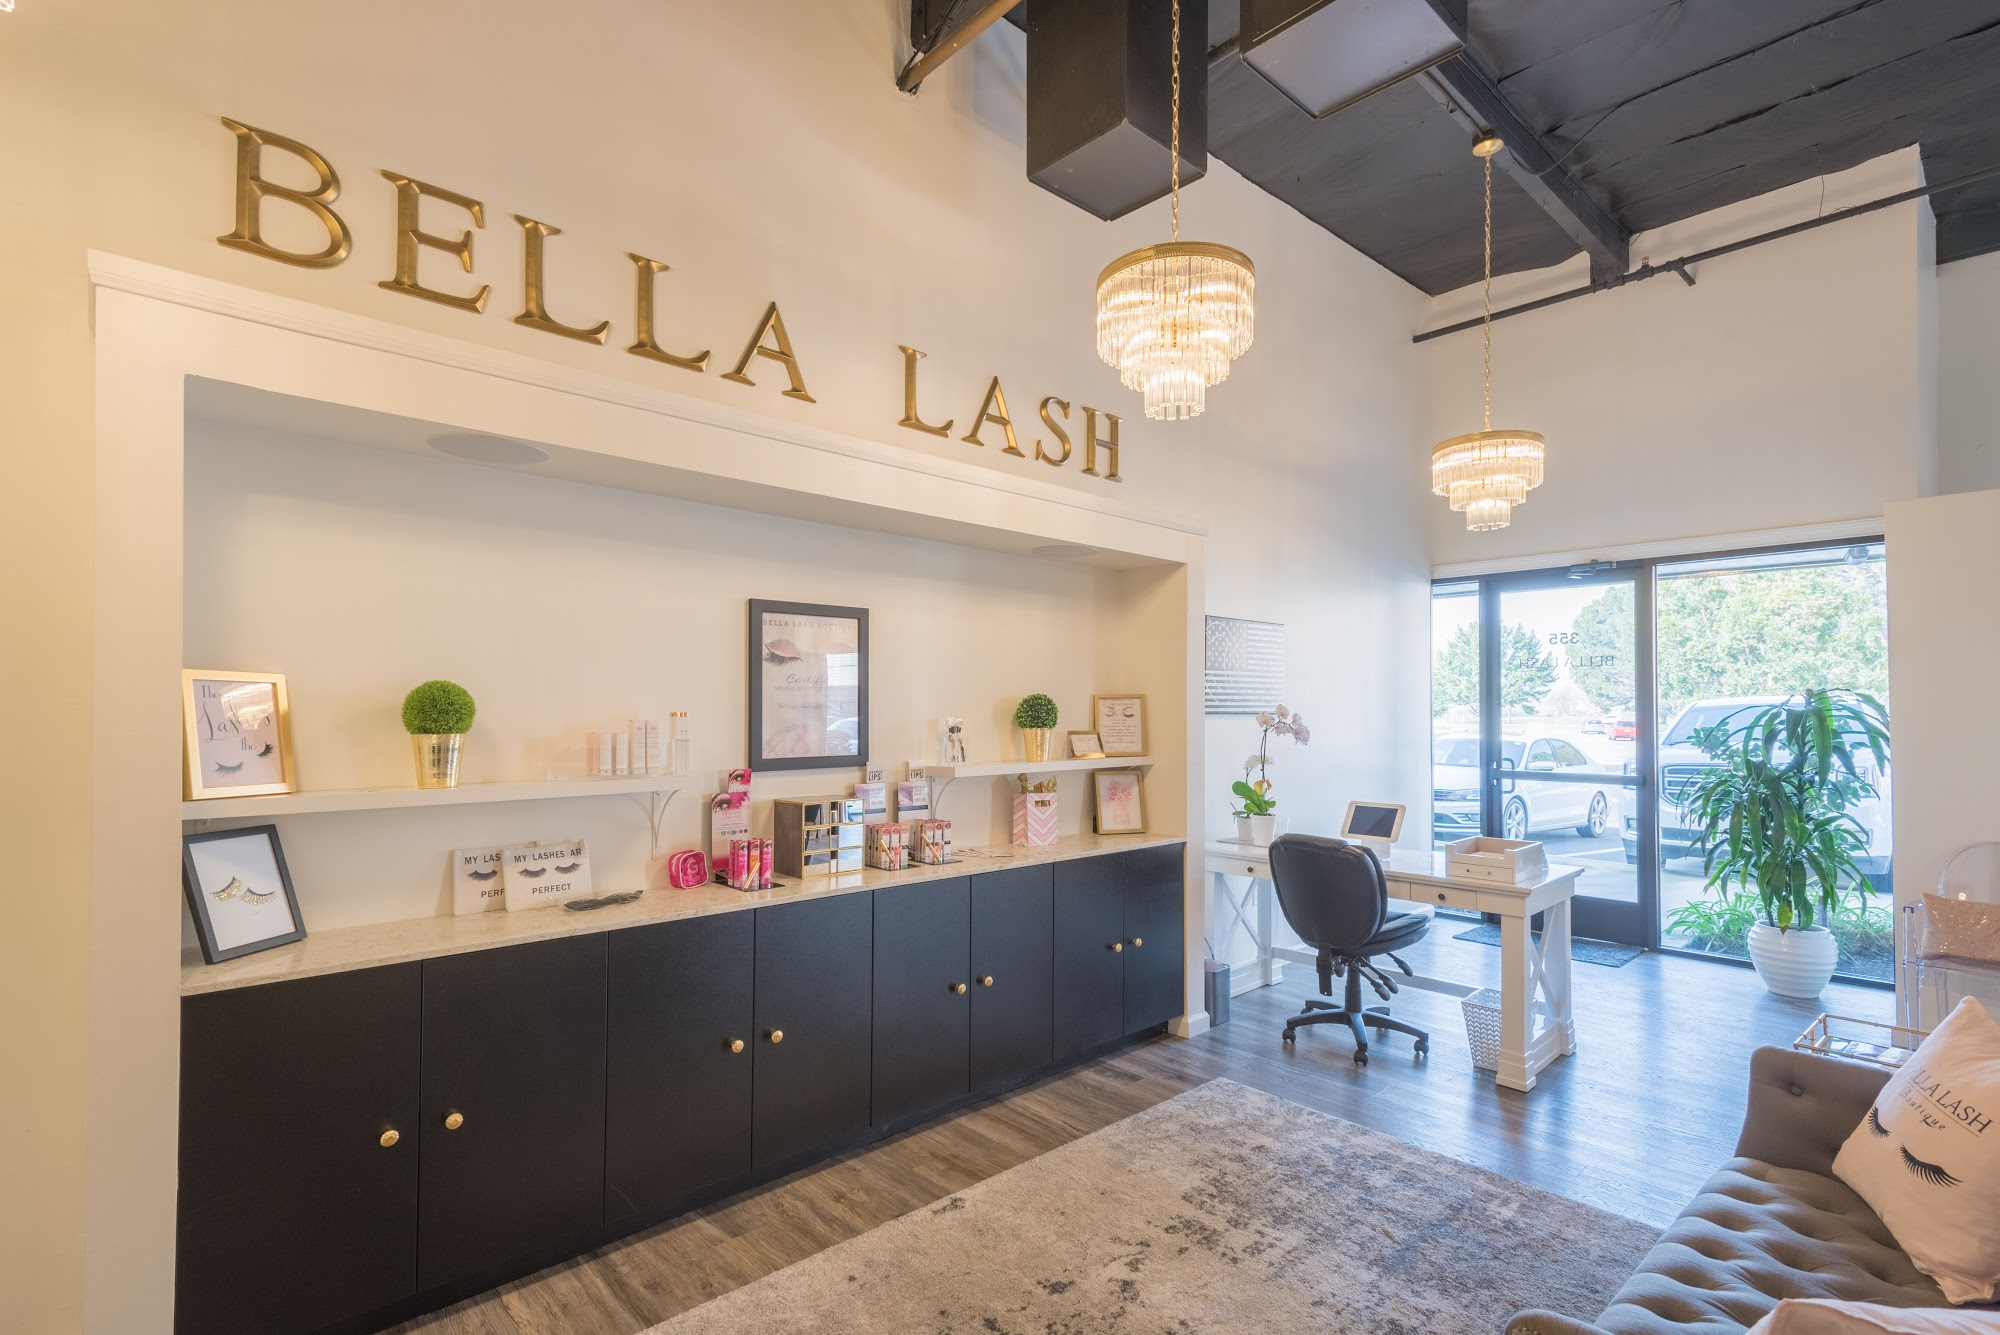 Bella Lash Boutique